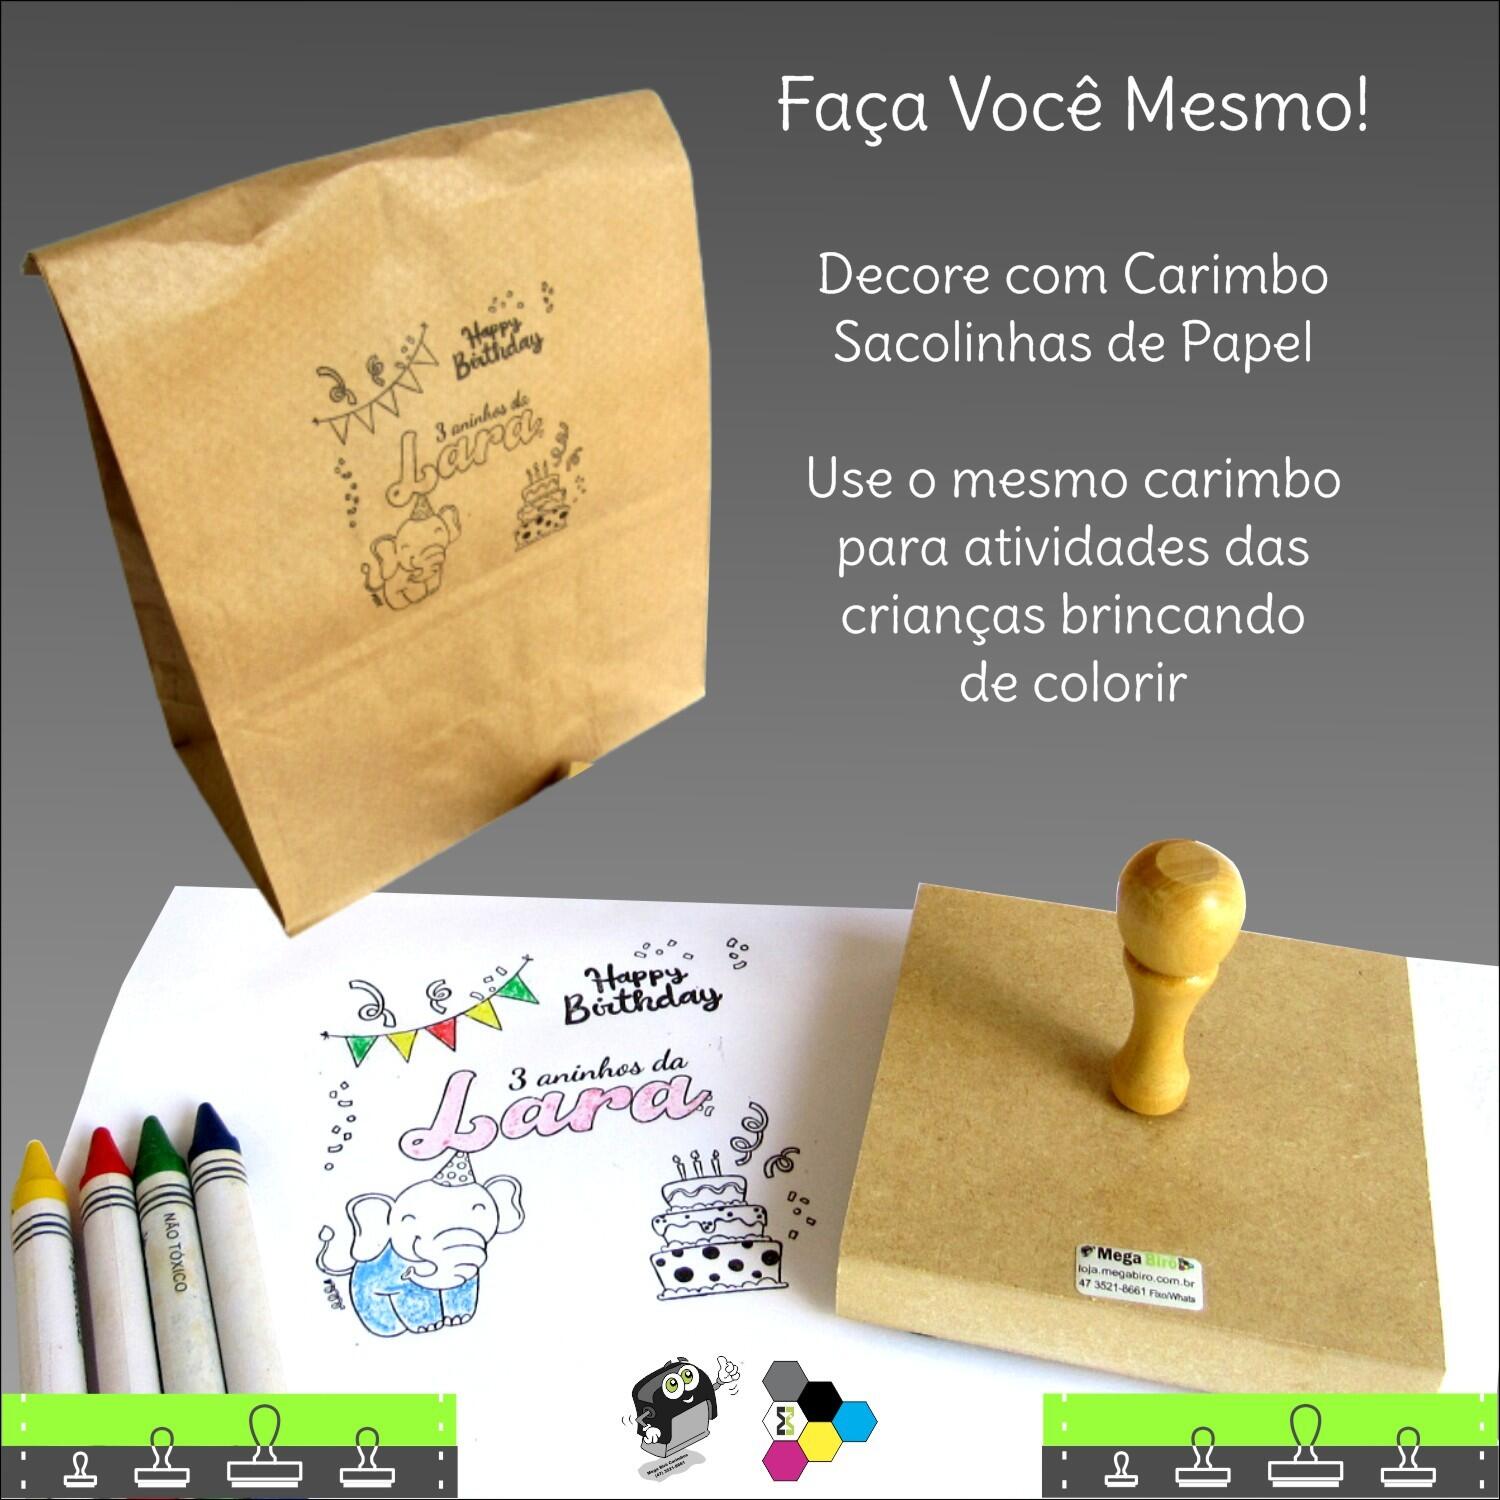 Comprar Carimbo em Madeira Personalizado 10x10 cm - a partir de R$67,45 -  Carimbos Mega Birô